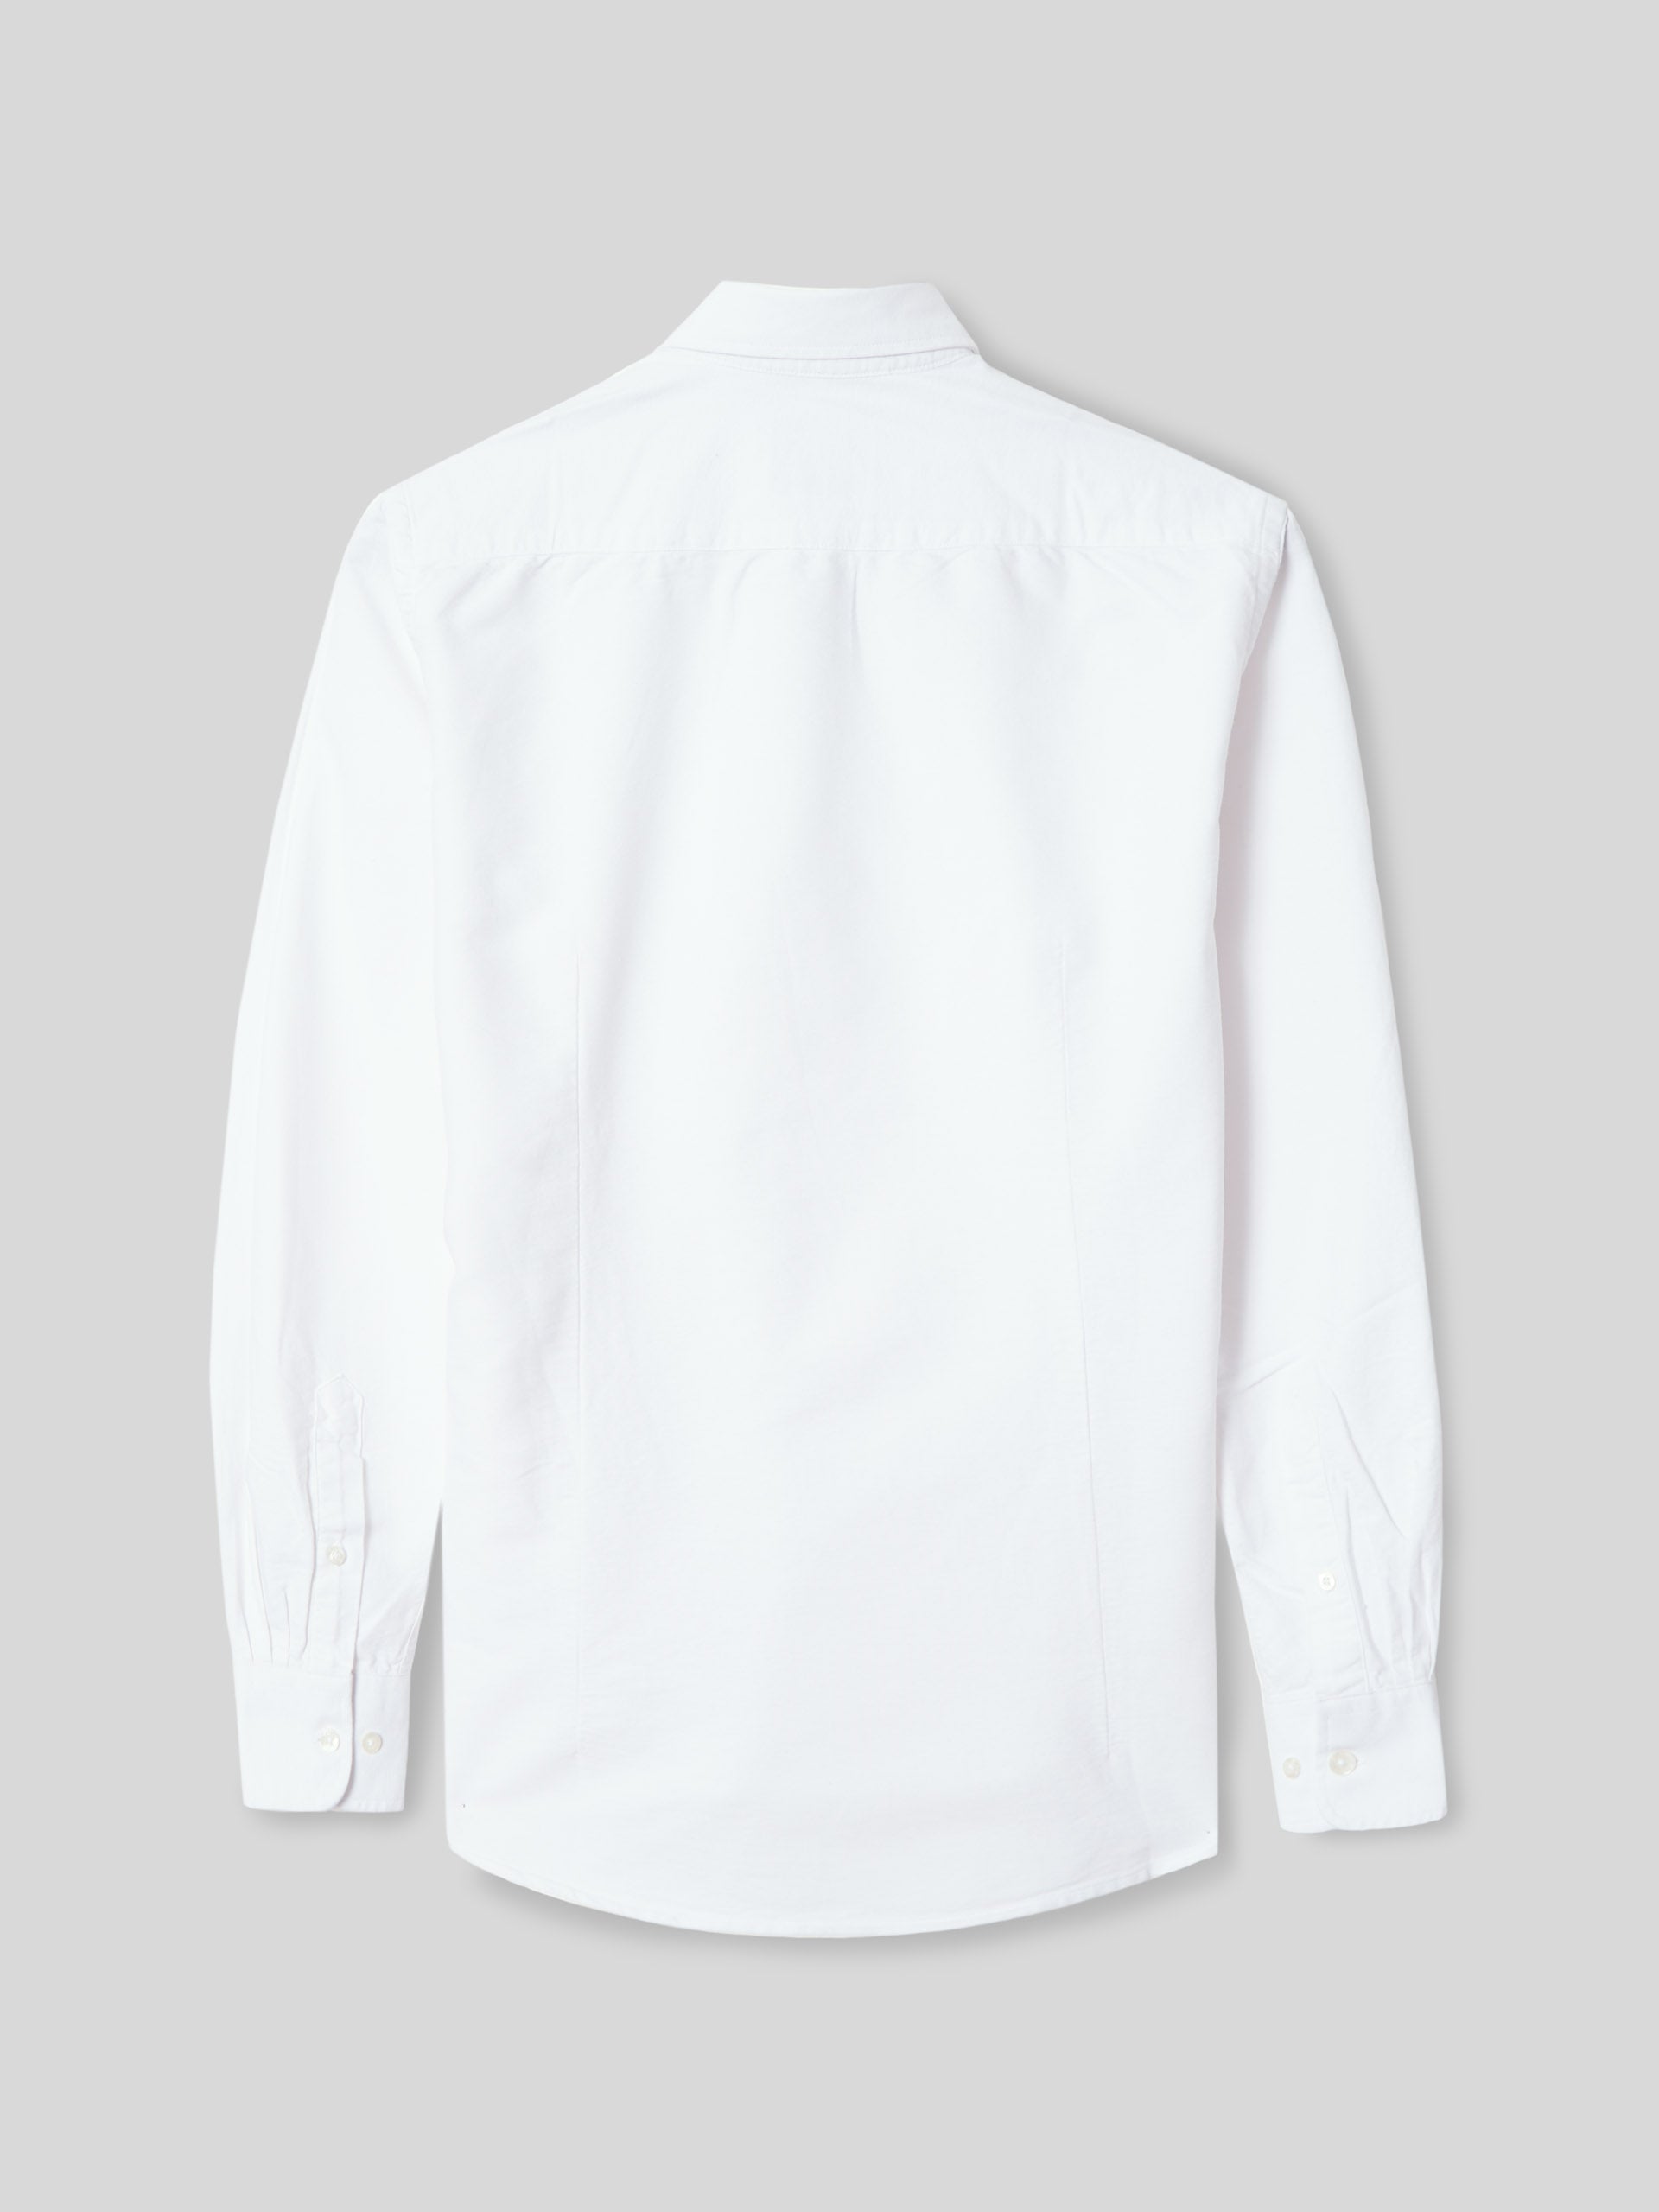 White oxford sport shirt